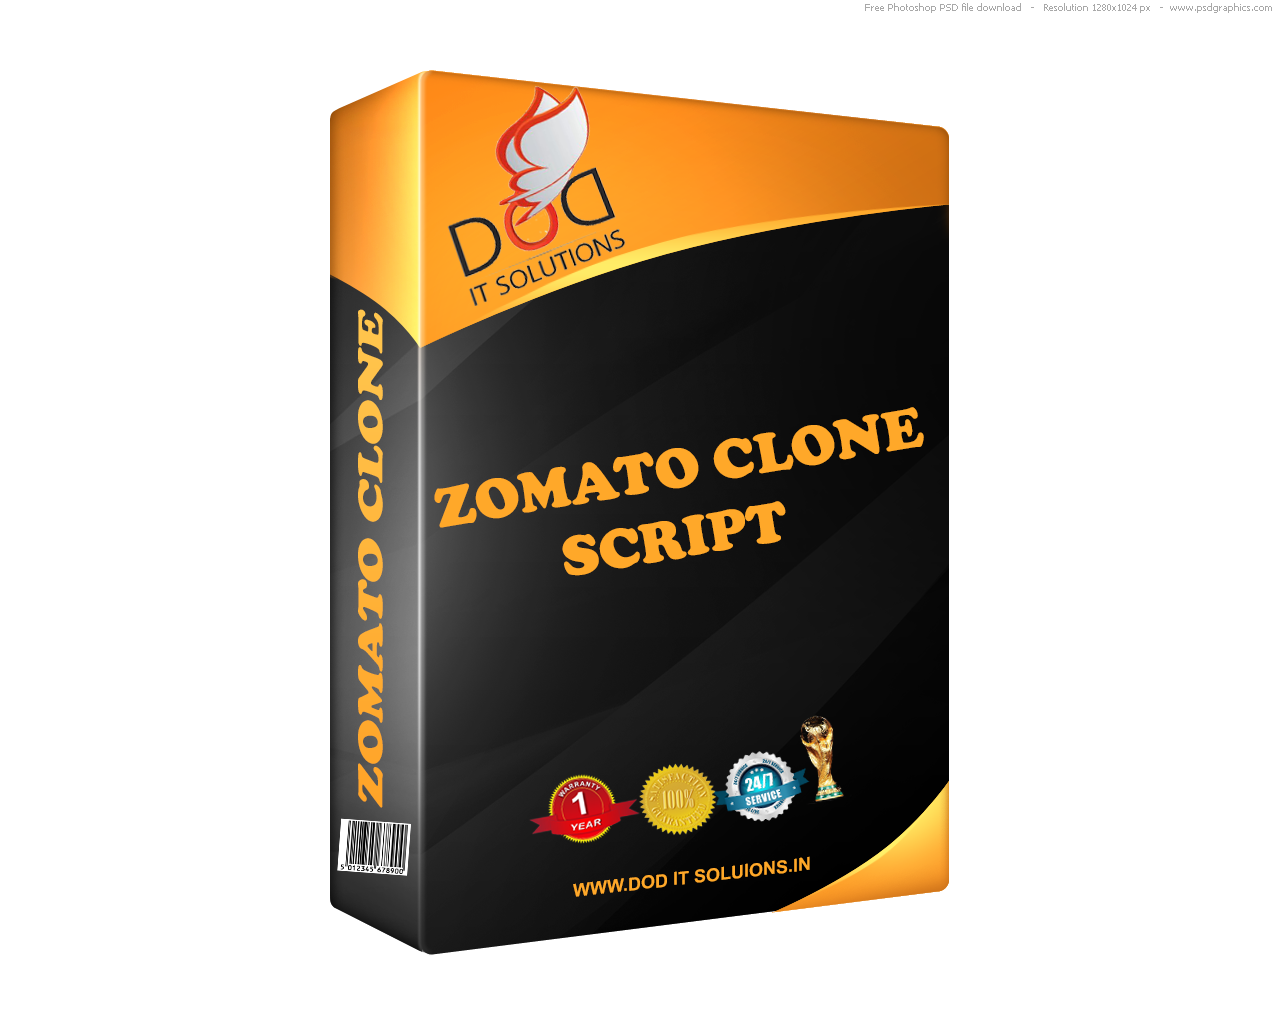 Zomato Clone Script